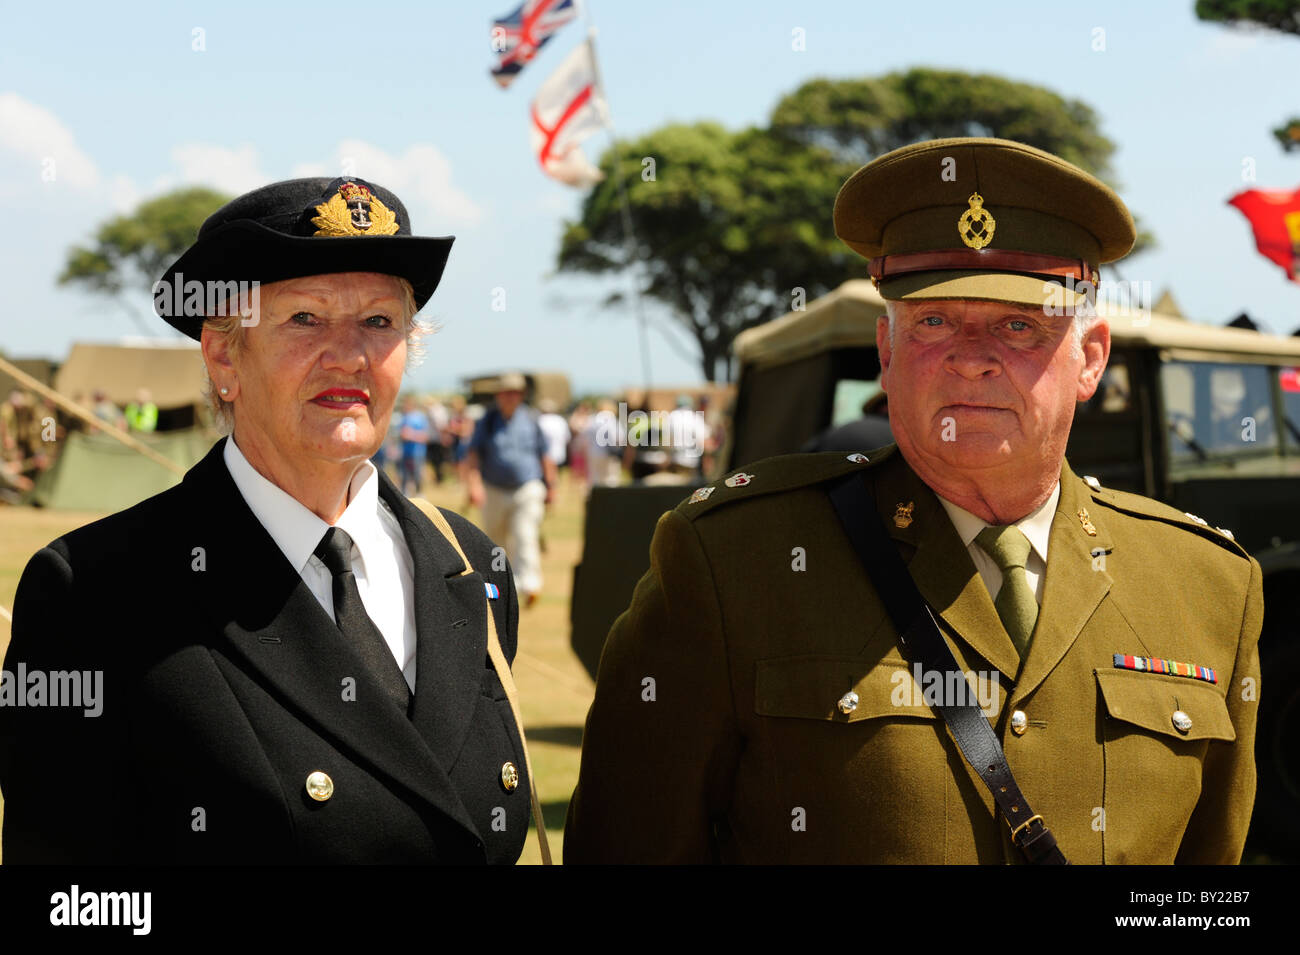 Rollenspieler verkleidet als britische Oberstleutnant und seine Gefährtin Offizier der Royal Navy während ein d-Day-Re-Enactment. Stockfoto